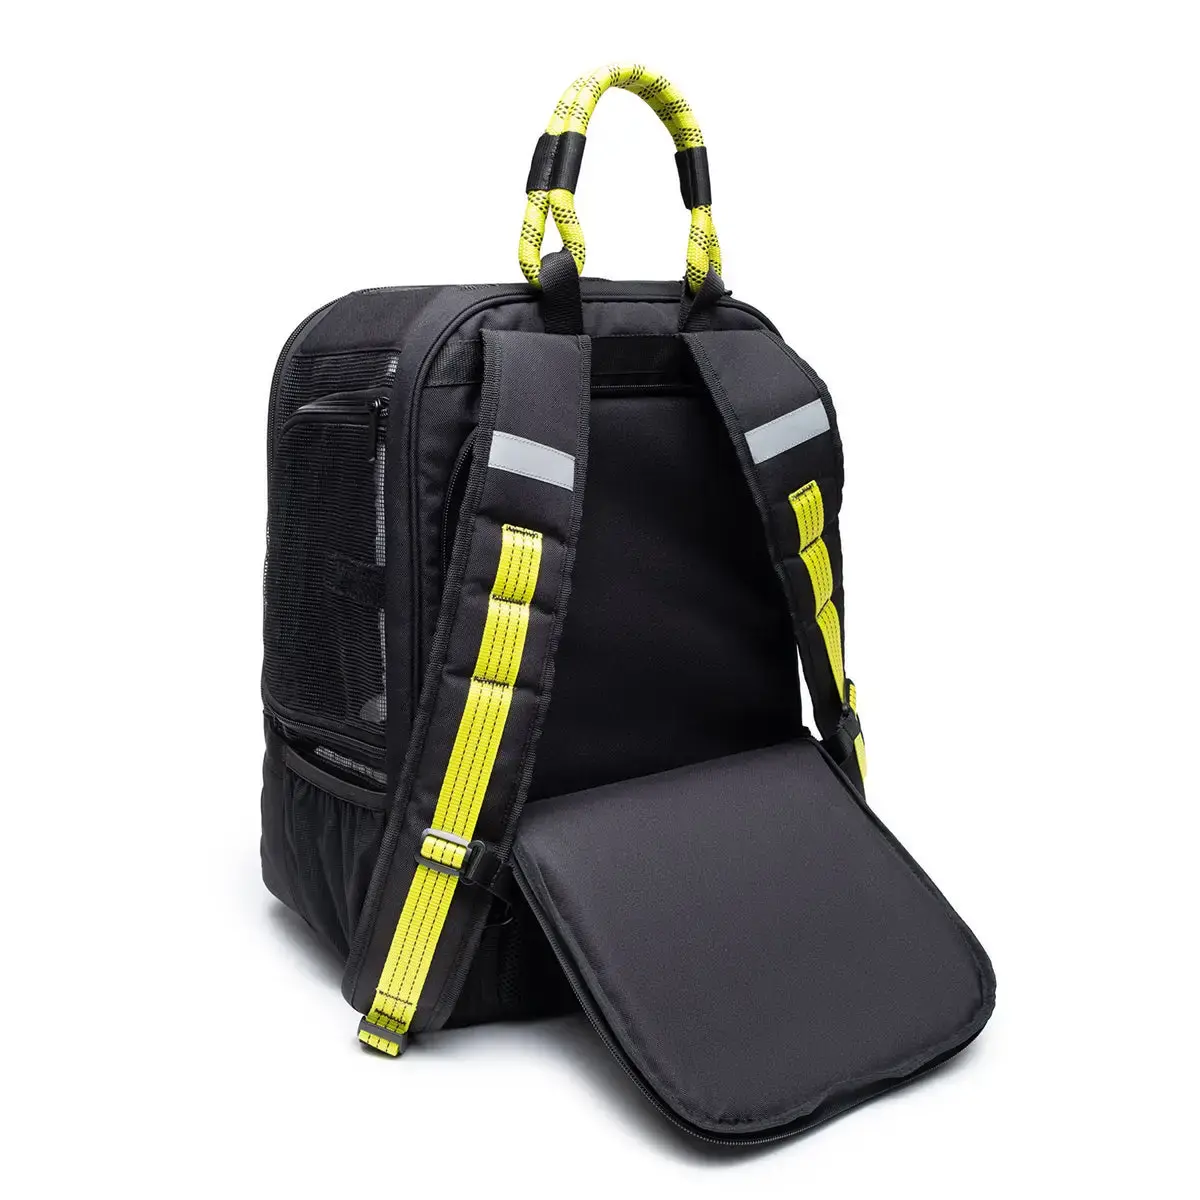 Roverlund Roverlund Backpack Black/Yellow